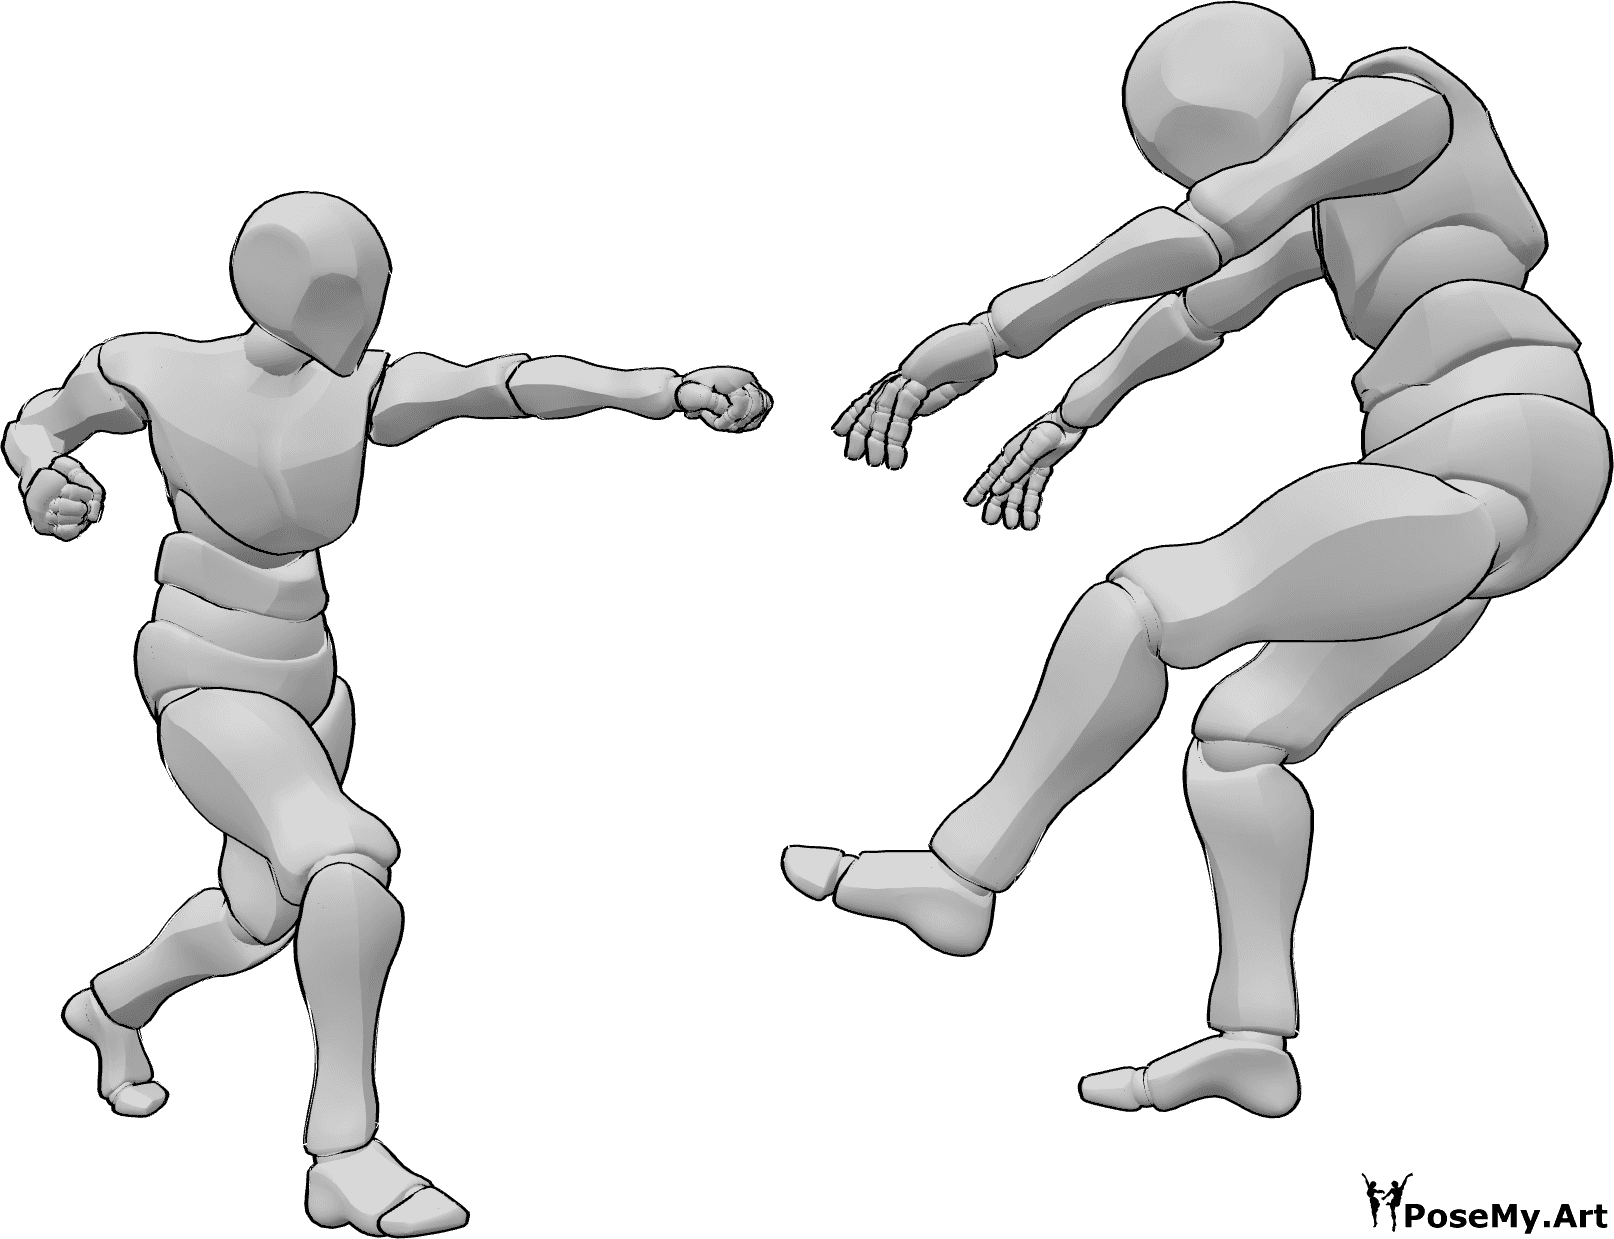 Posen-Referenz- Fallende Pose einnehmen - Ein Mann schlägt auf einen anderen Mann ein, der rückwärts in die Luft fällt